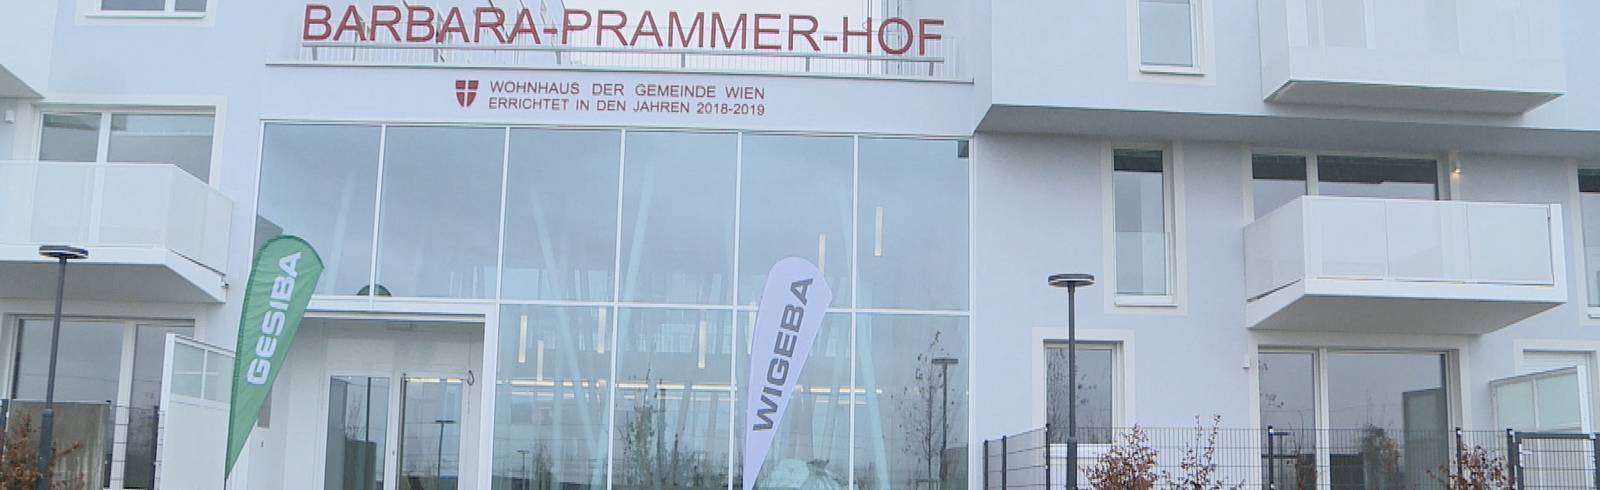 Prammer-Hof: Erster neuer Gemeindebau fertig